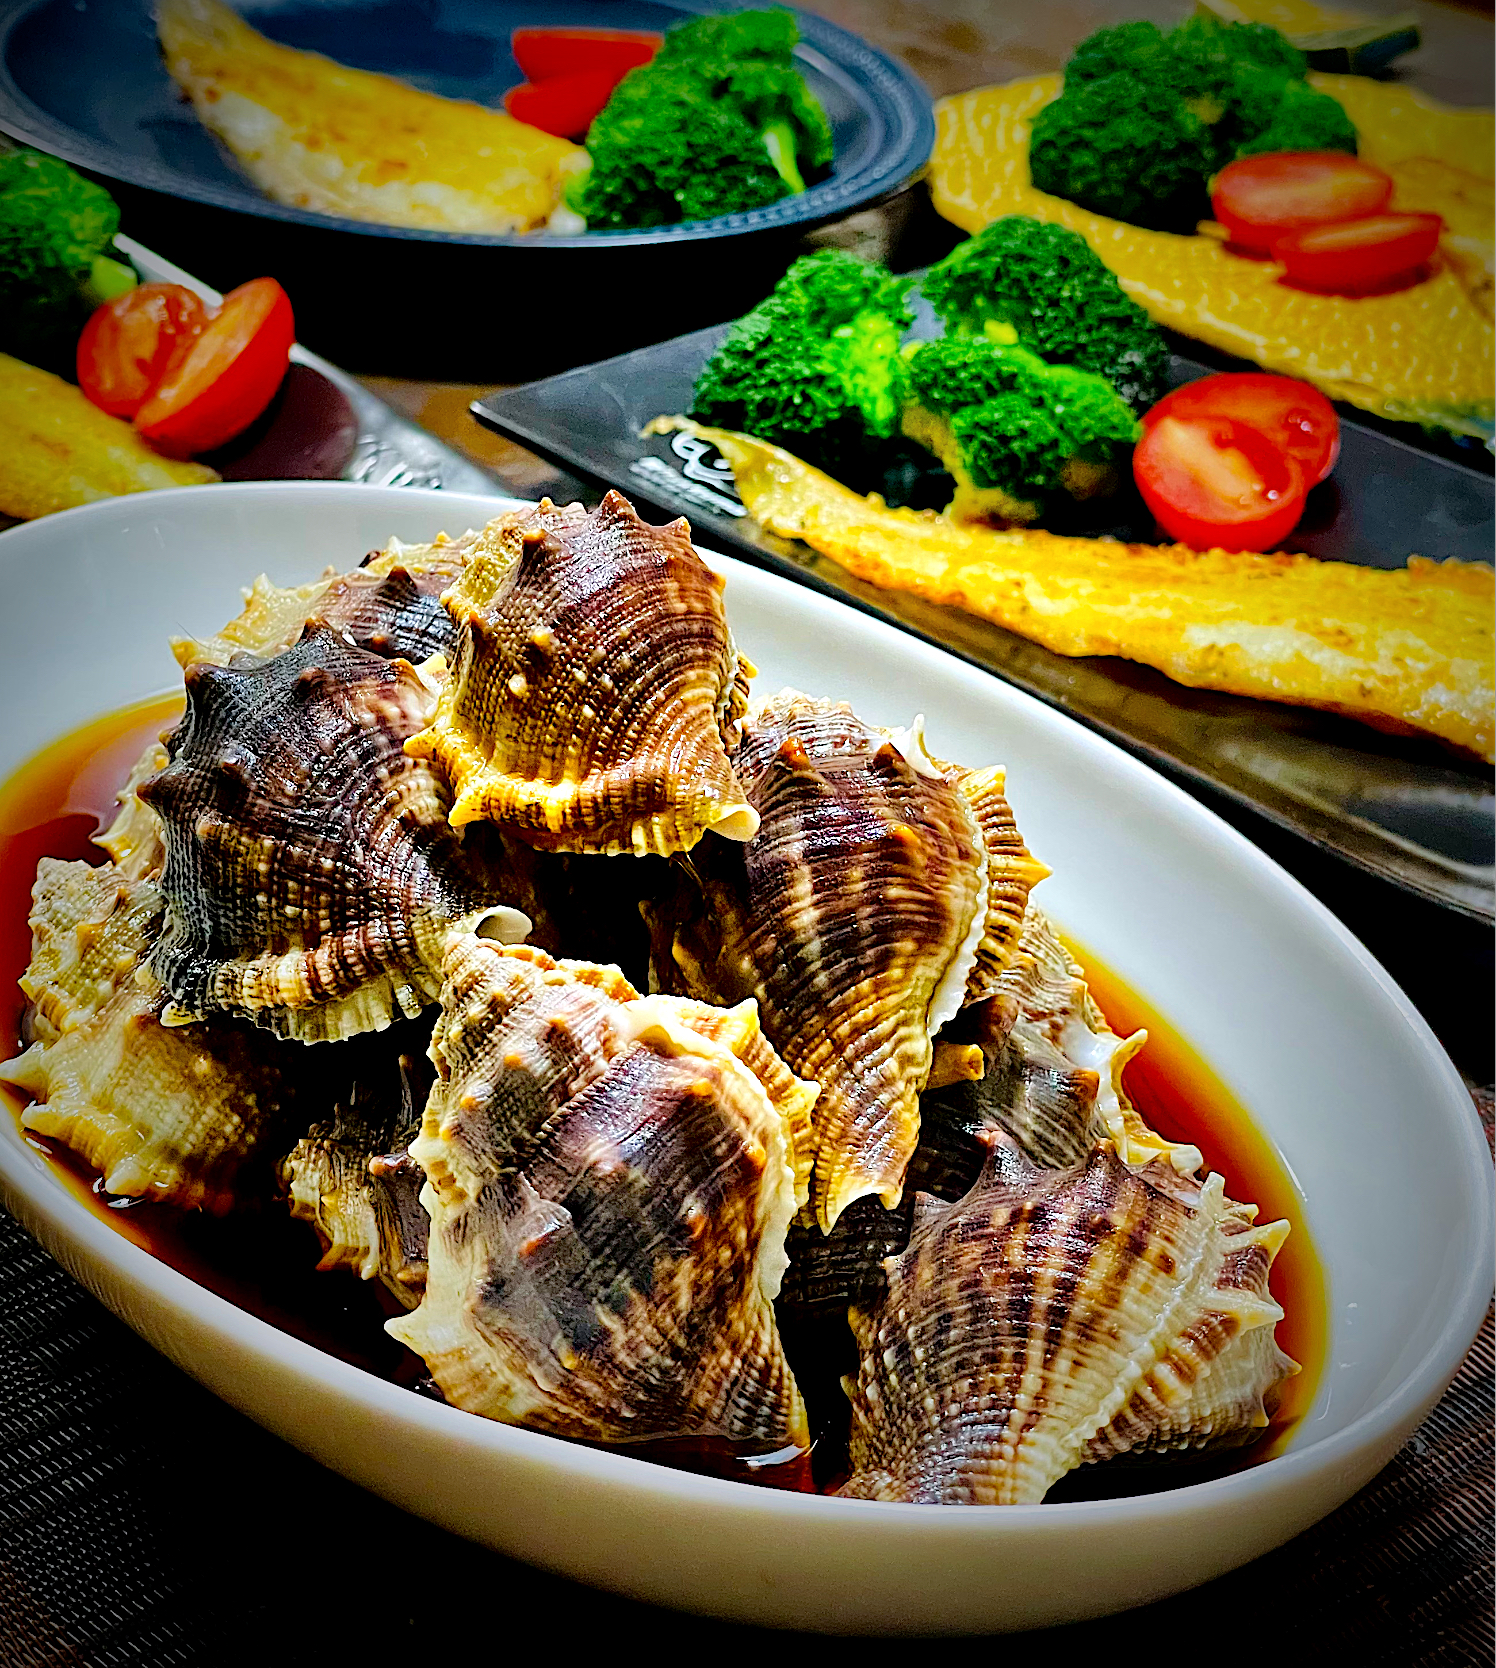 ミヤコボラ貝の煮付け✨✨✨今が旬の食材だよ❣️😋